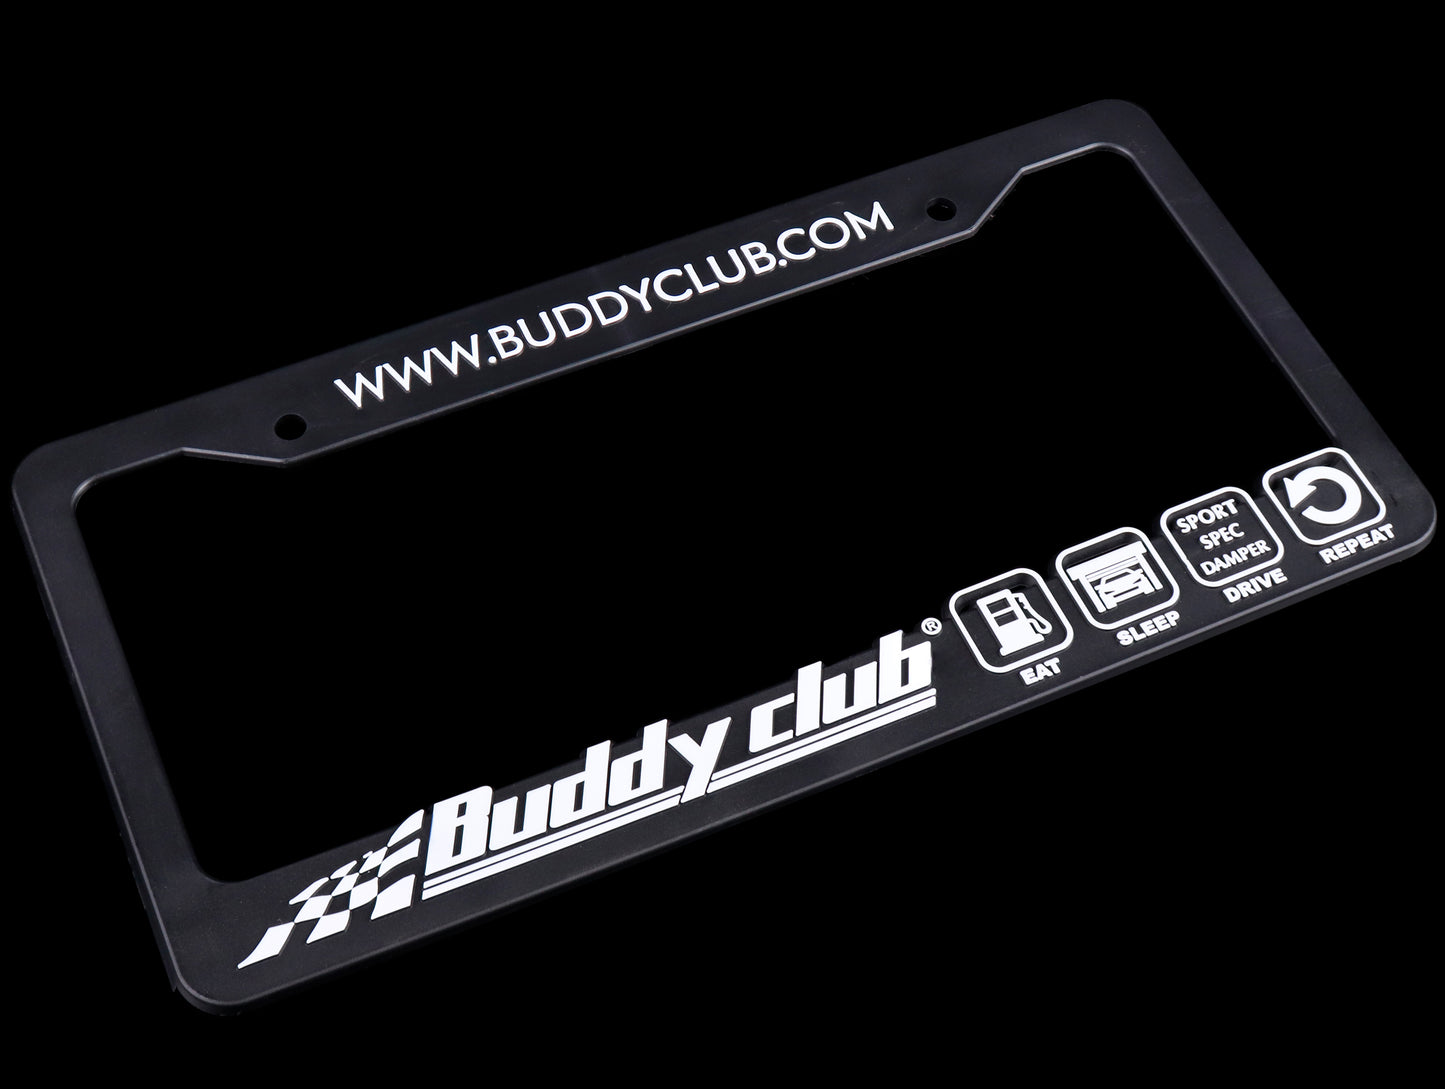 Buddy Club Sport Spec License Plate Frame